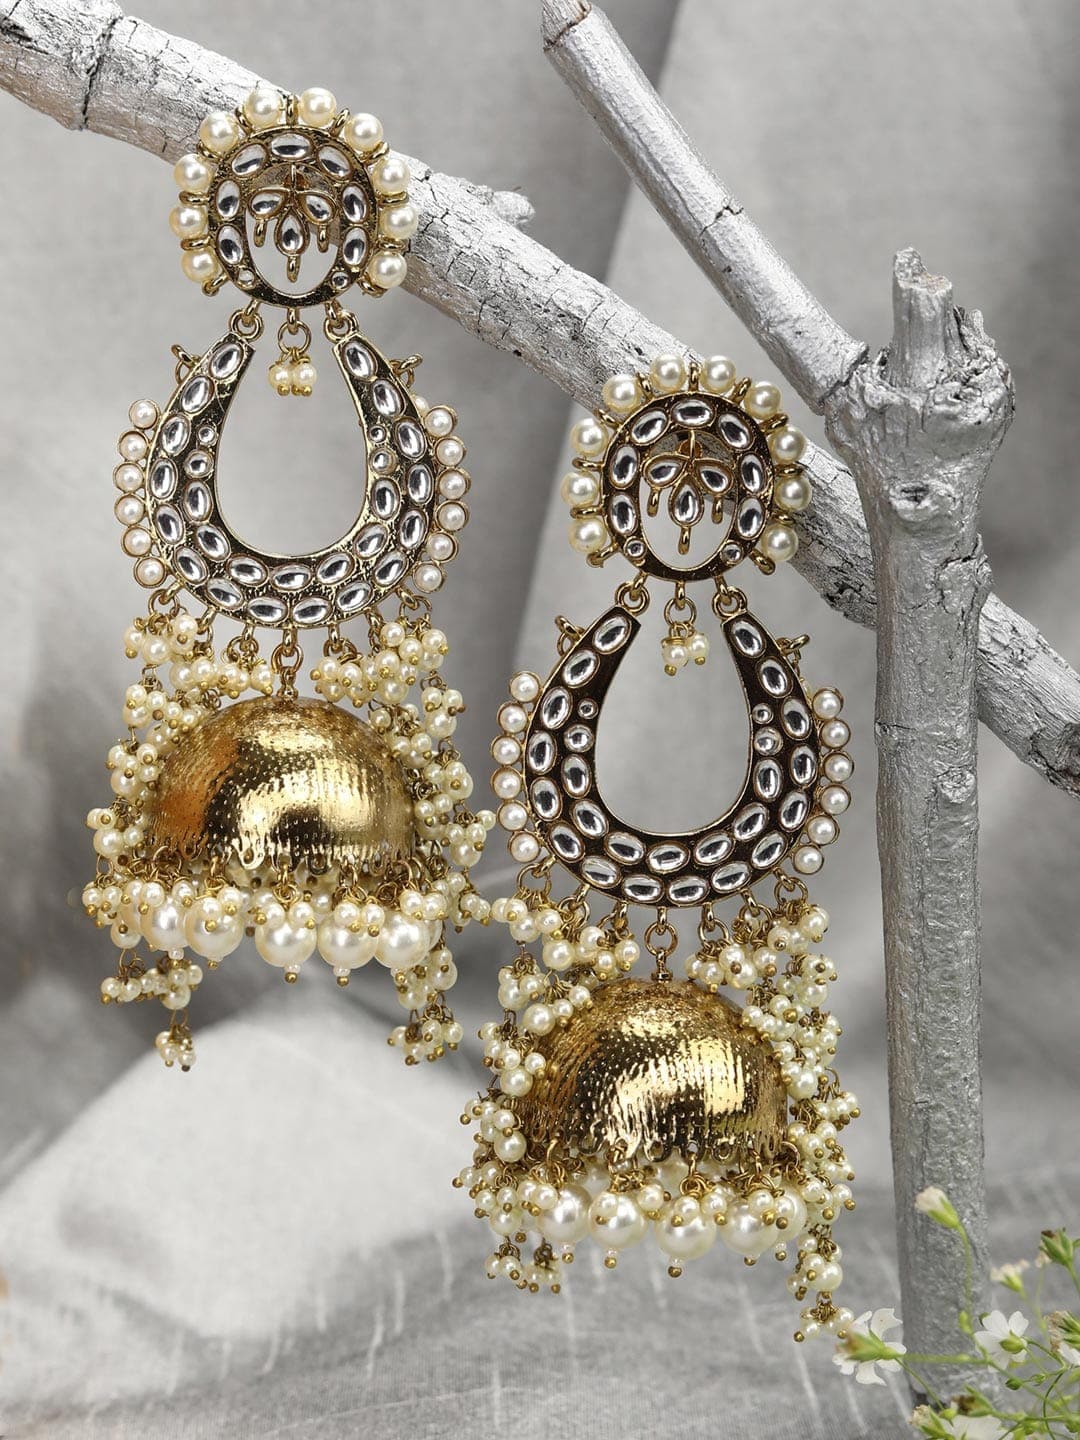 20 Chandbali earrings ideas | gold earrings designs, chandbali earrings, gold  jewelry fashion